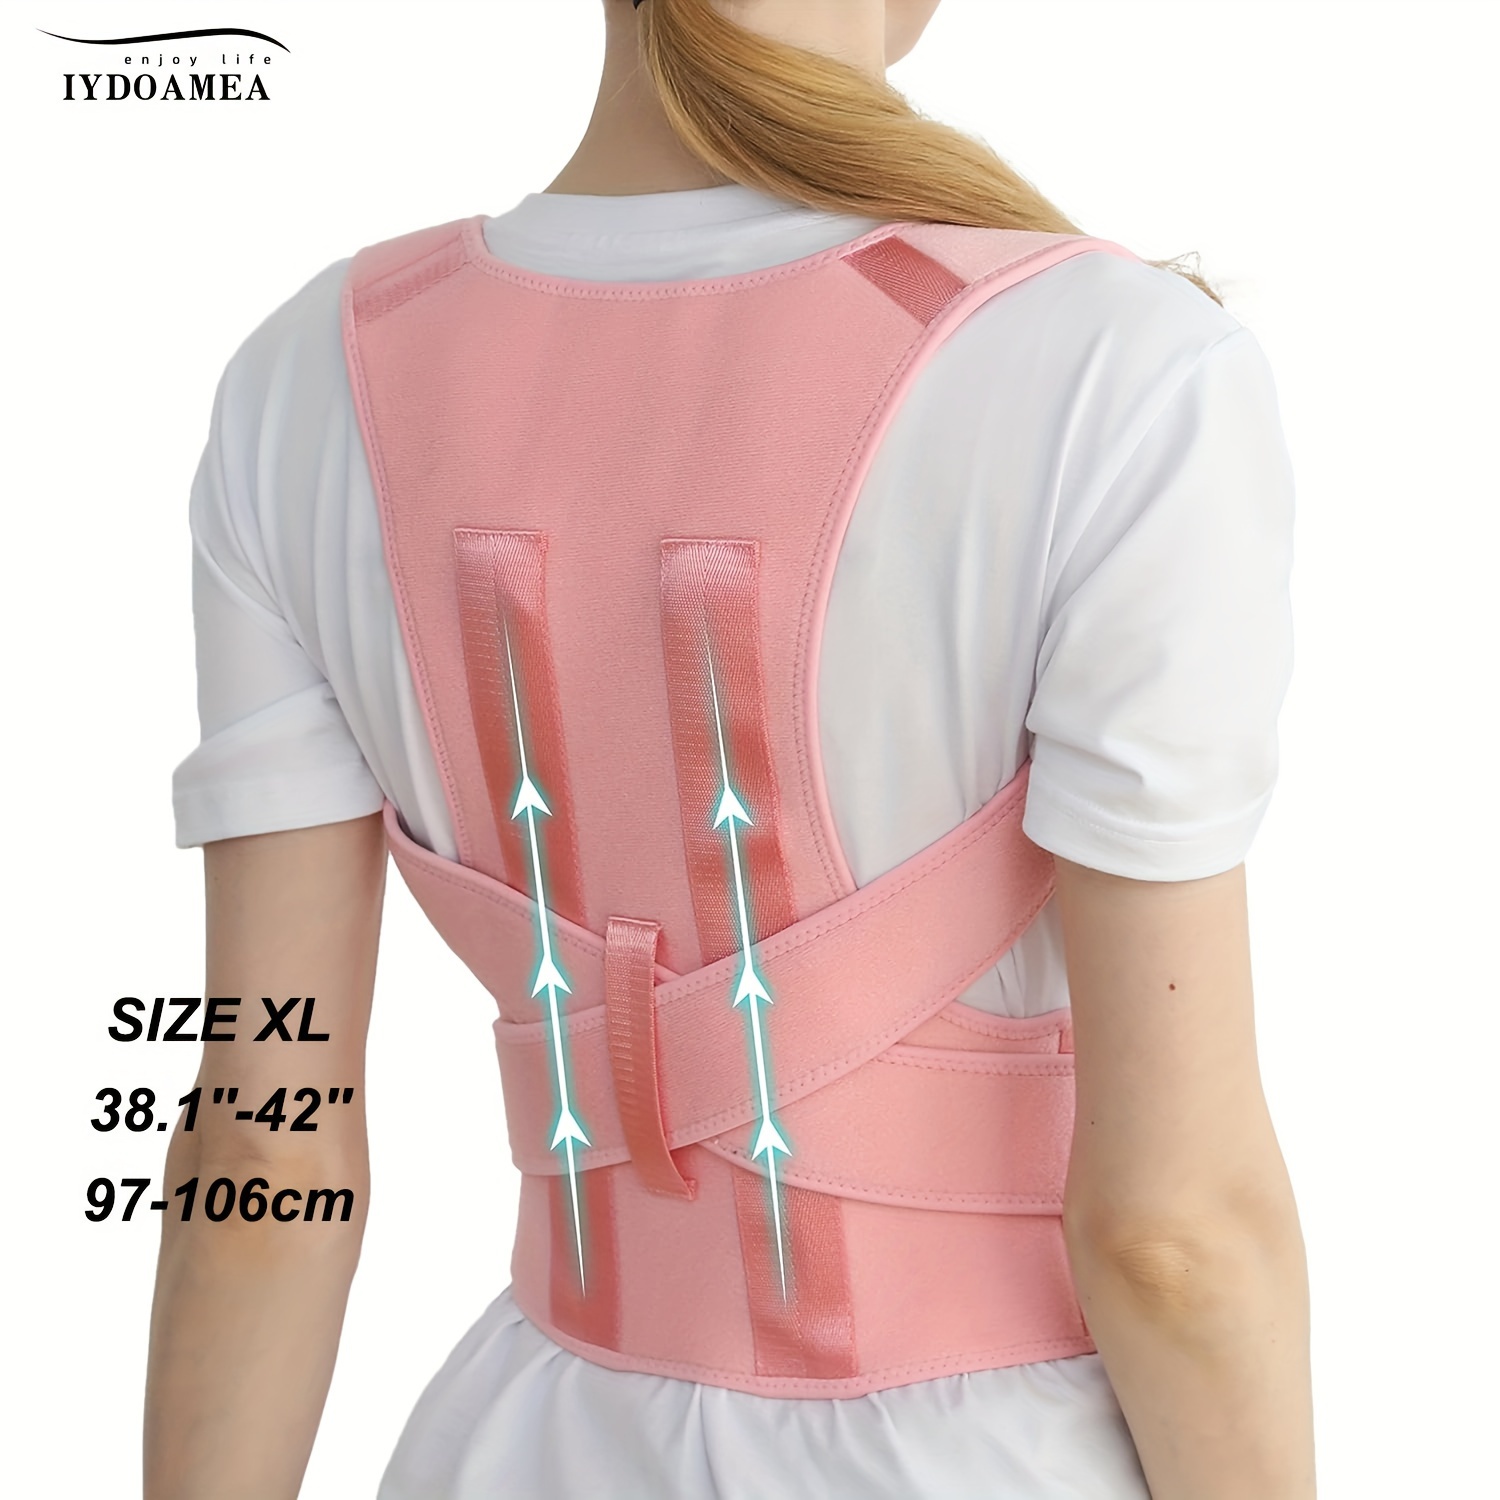 Posture Corrector for Women - Upper Back Brace Adjustable & Breathable for  Posture Correction: Neck Shoulder & Upper Back Pain Relief (L-XL)